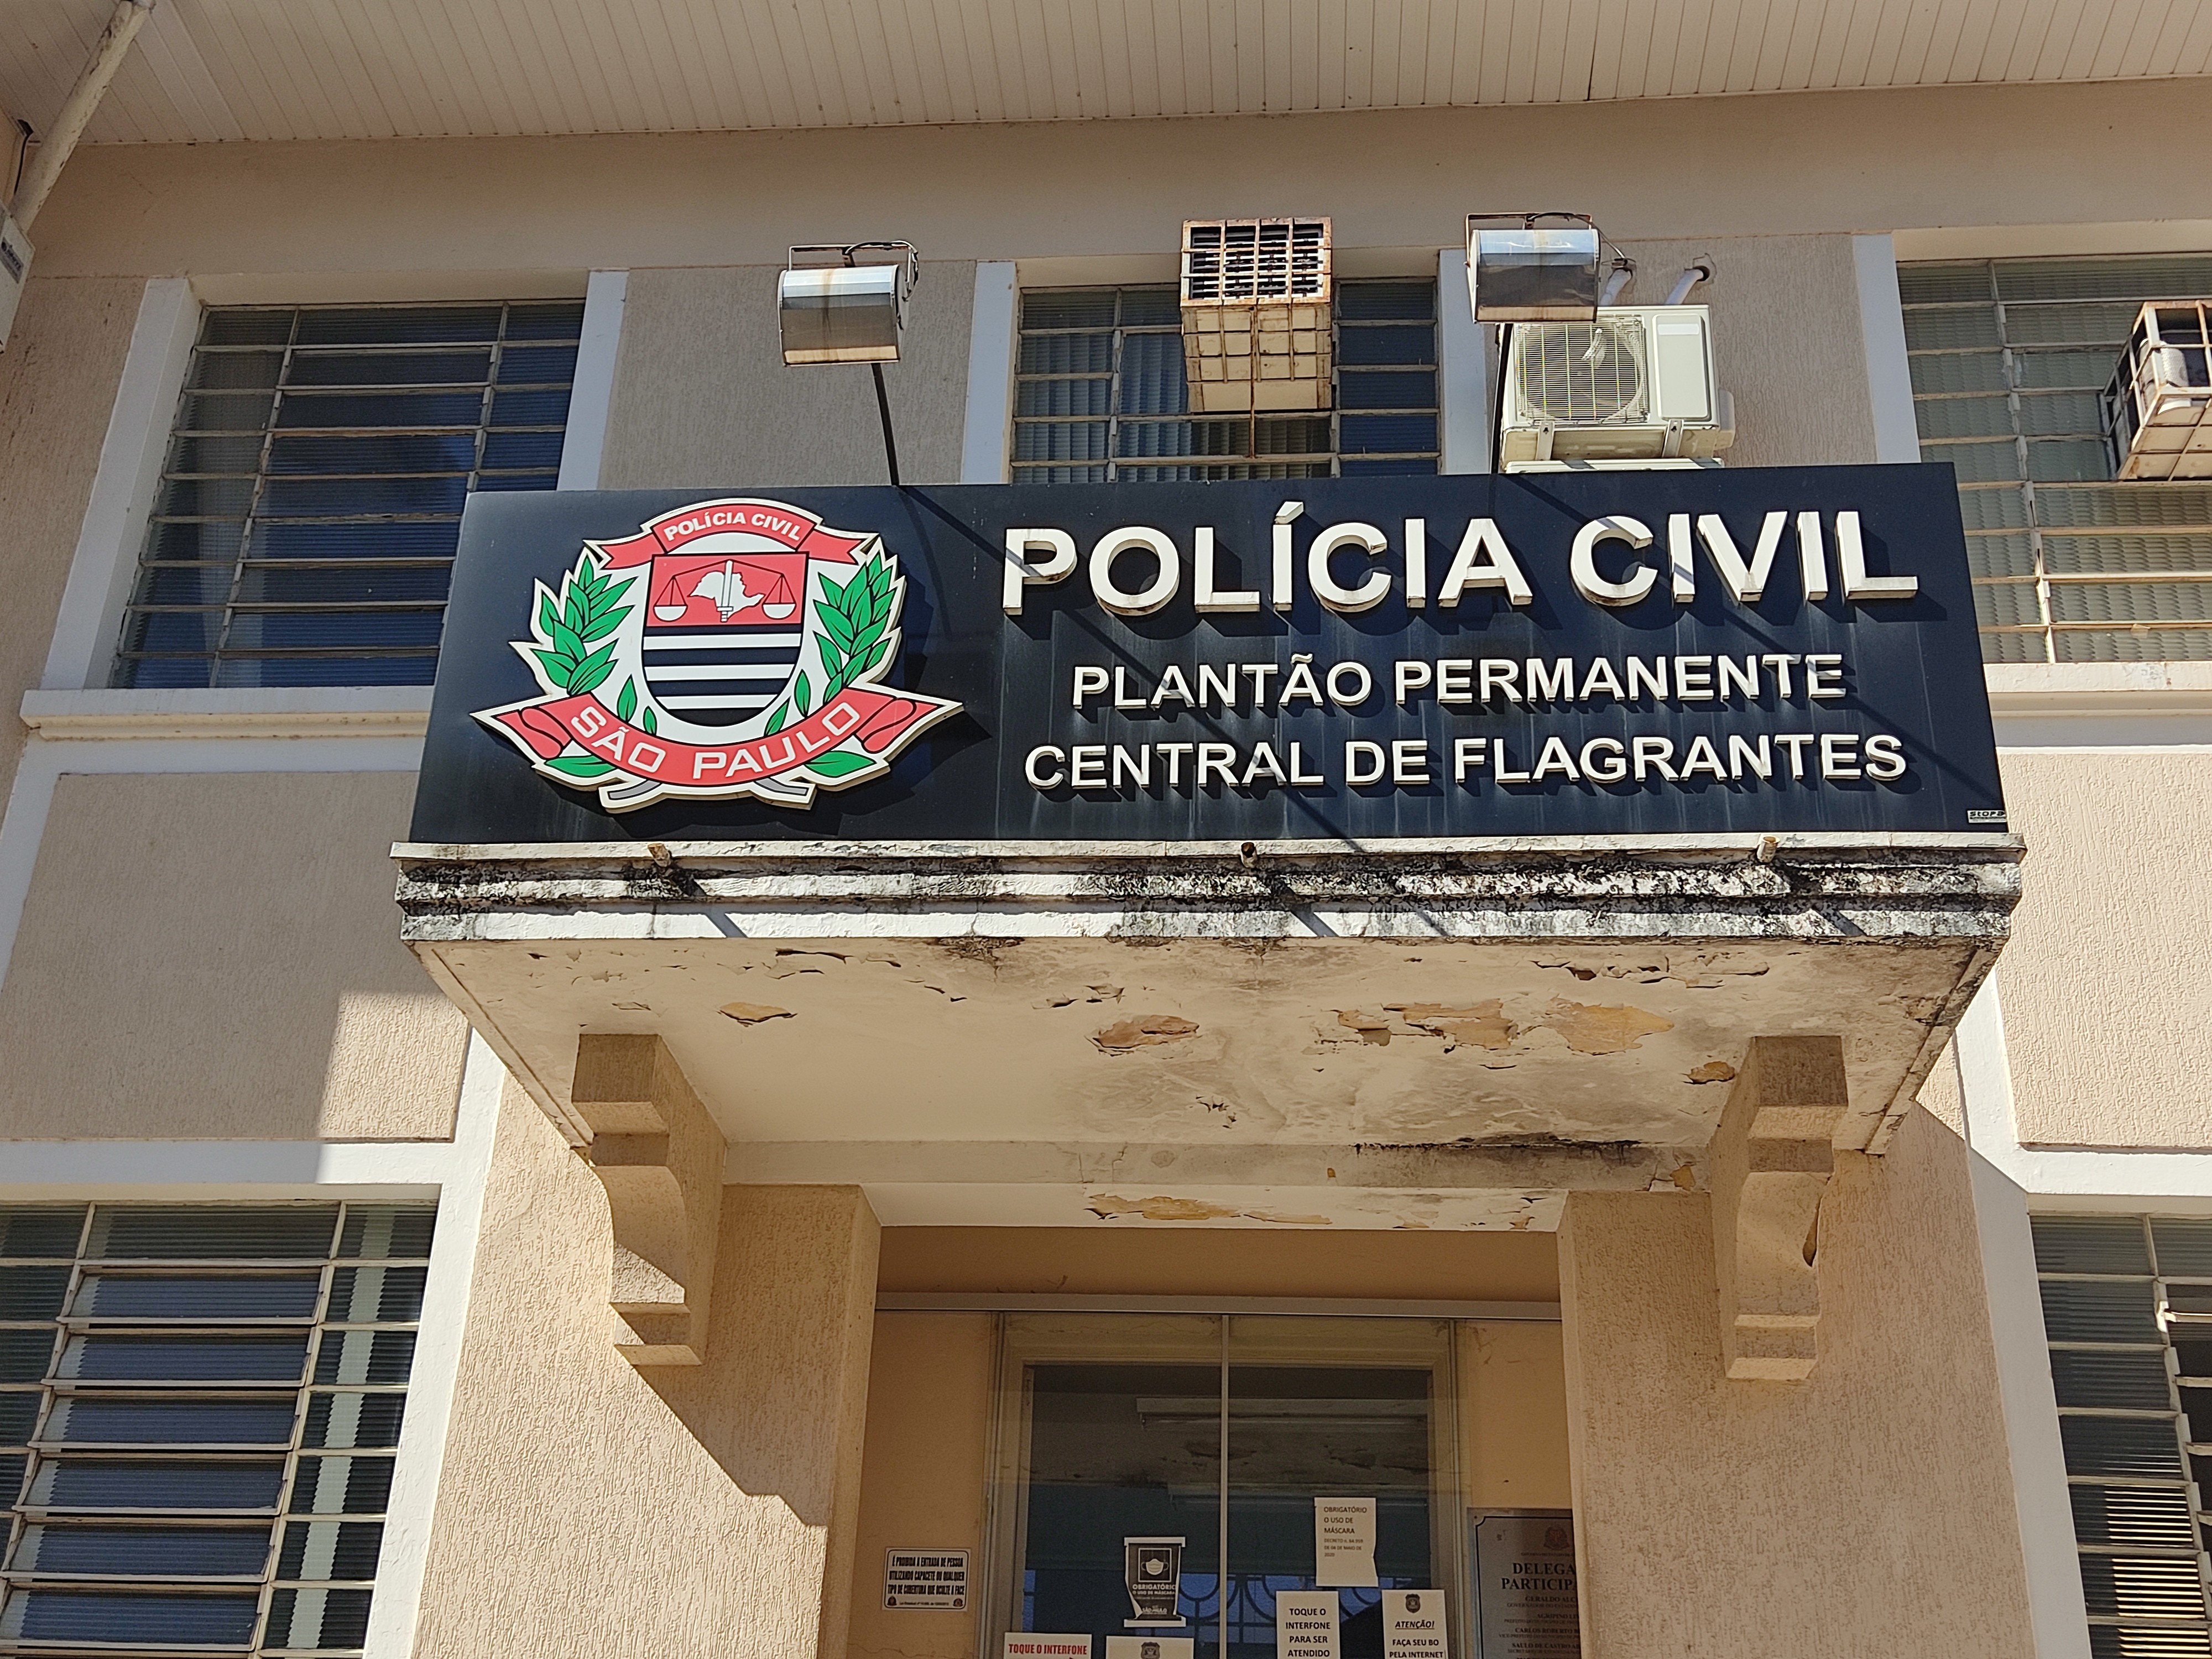 Novo decreto proíbe jogos de cartas e sinuca no interior de  estabelecimentos, em Criciúma